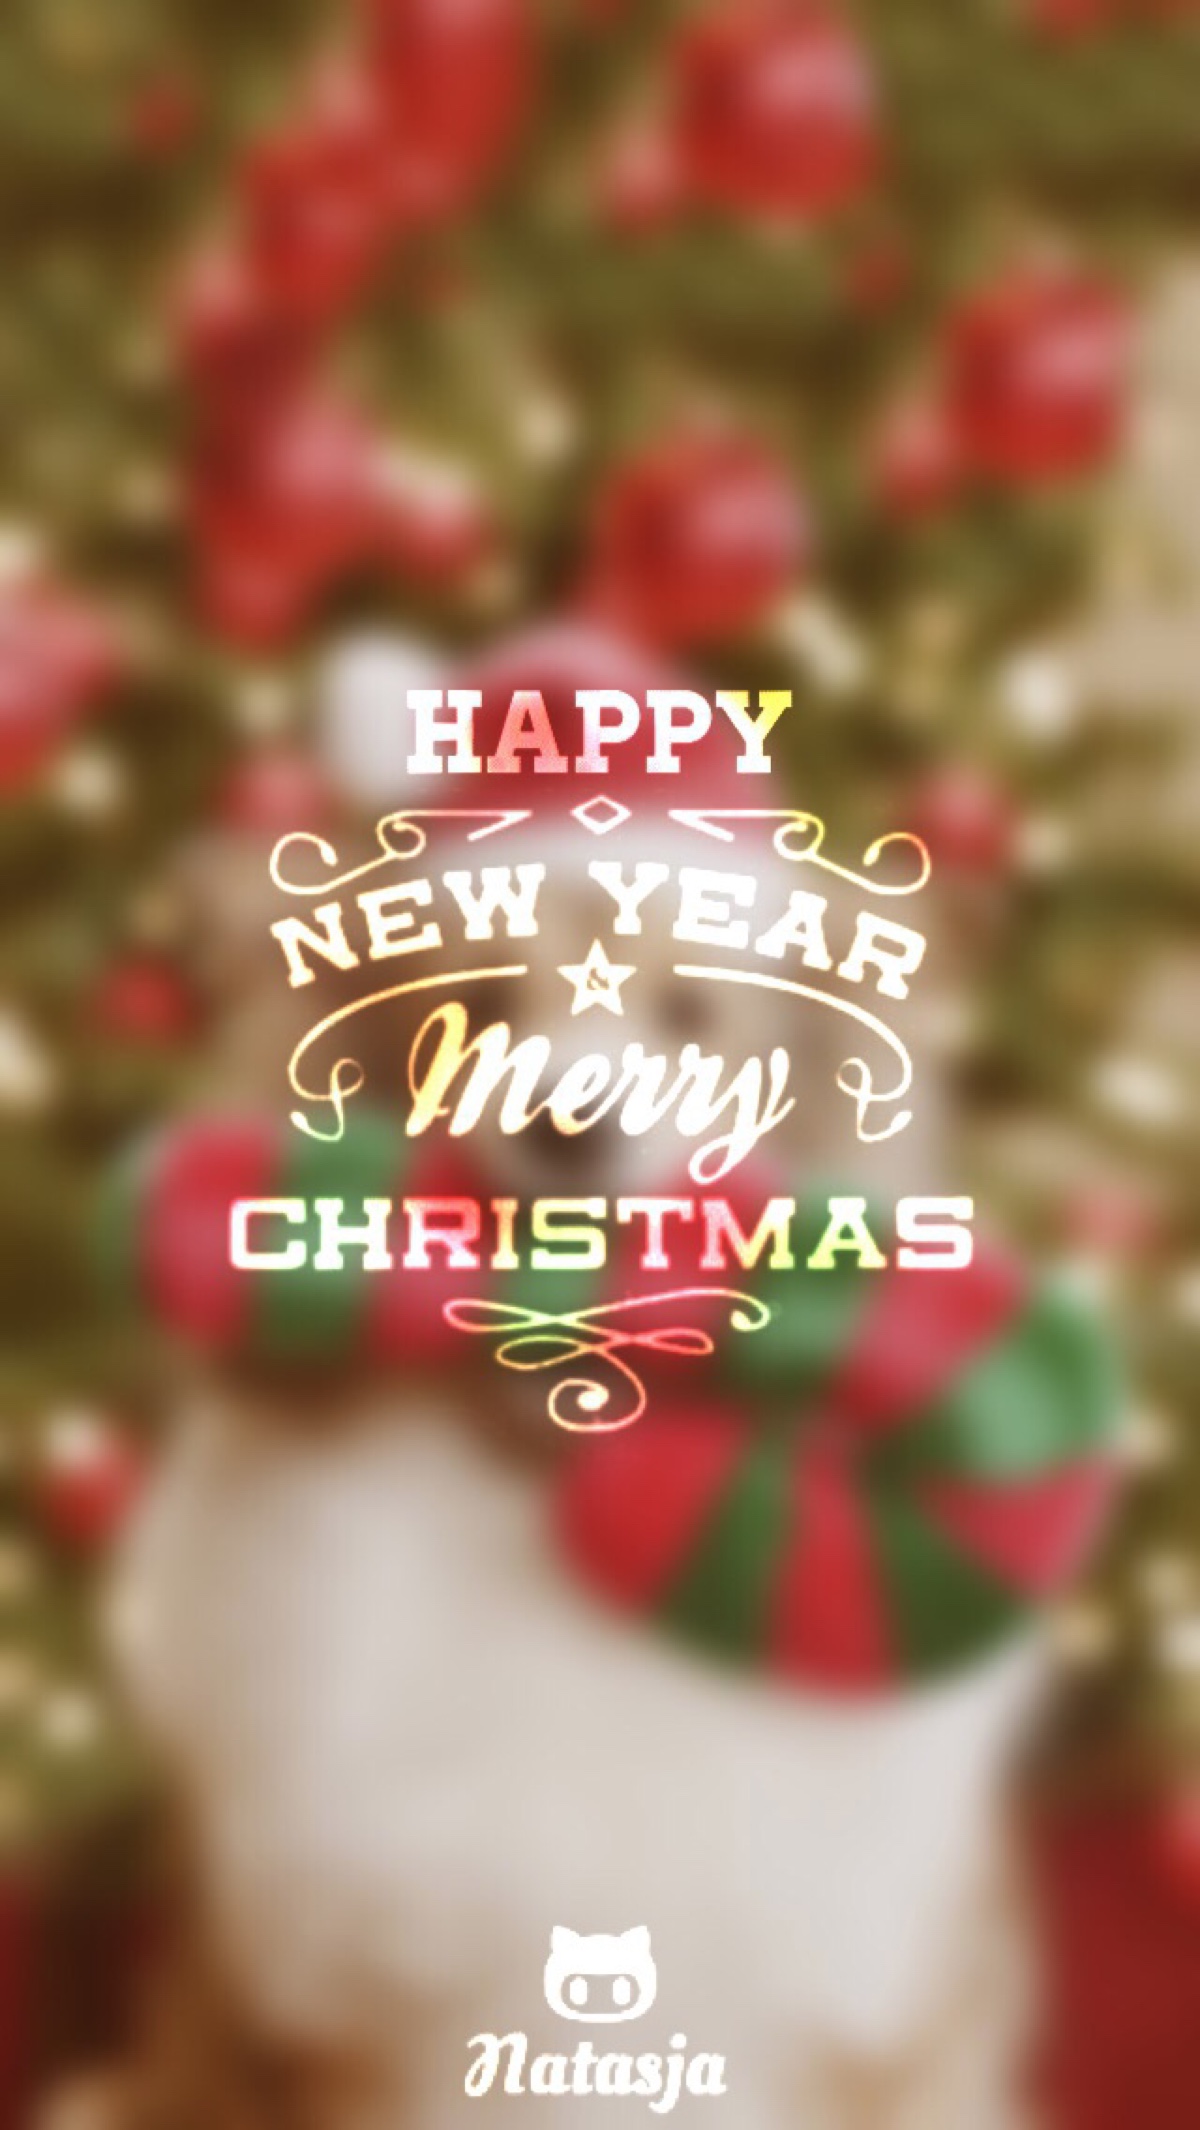 merry christmas 祝你圣诞快乐 2015堆圣诞 原创自制壁纸 文字 句子